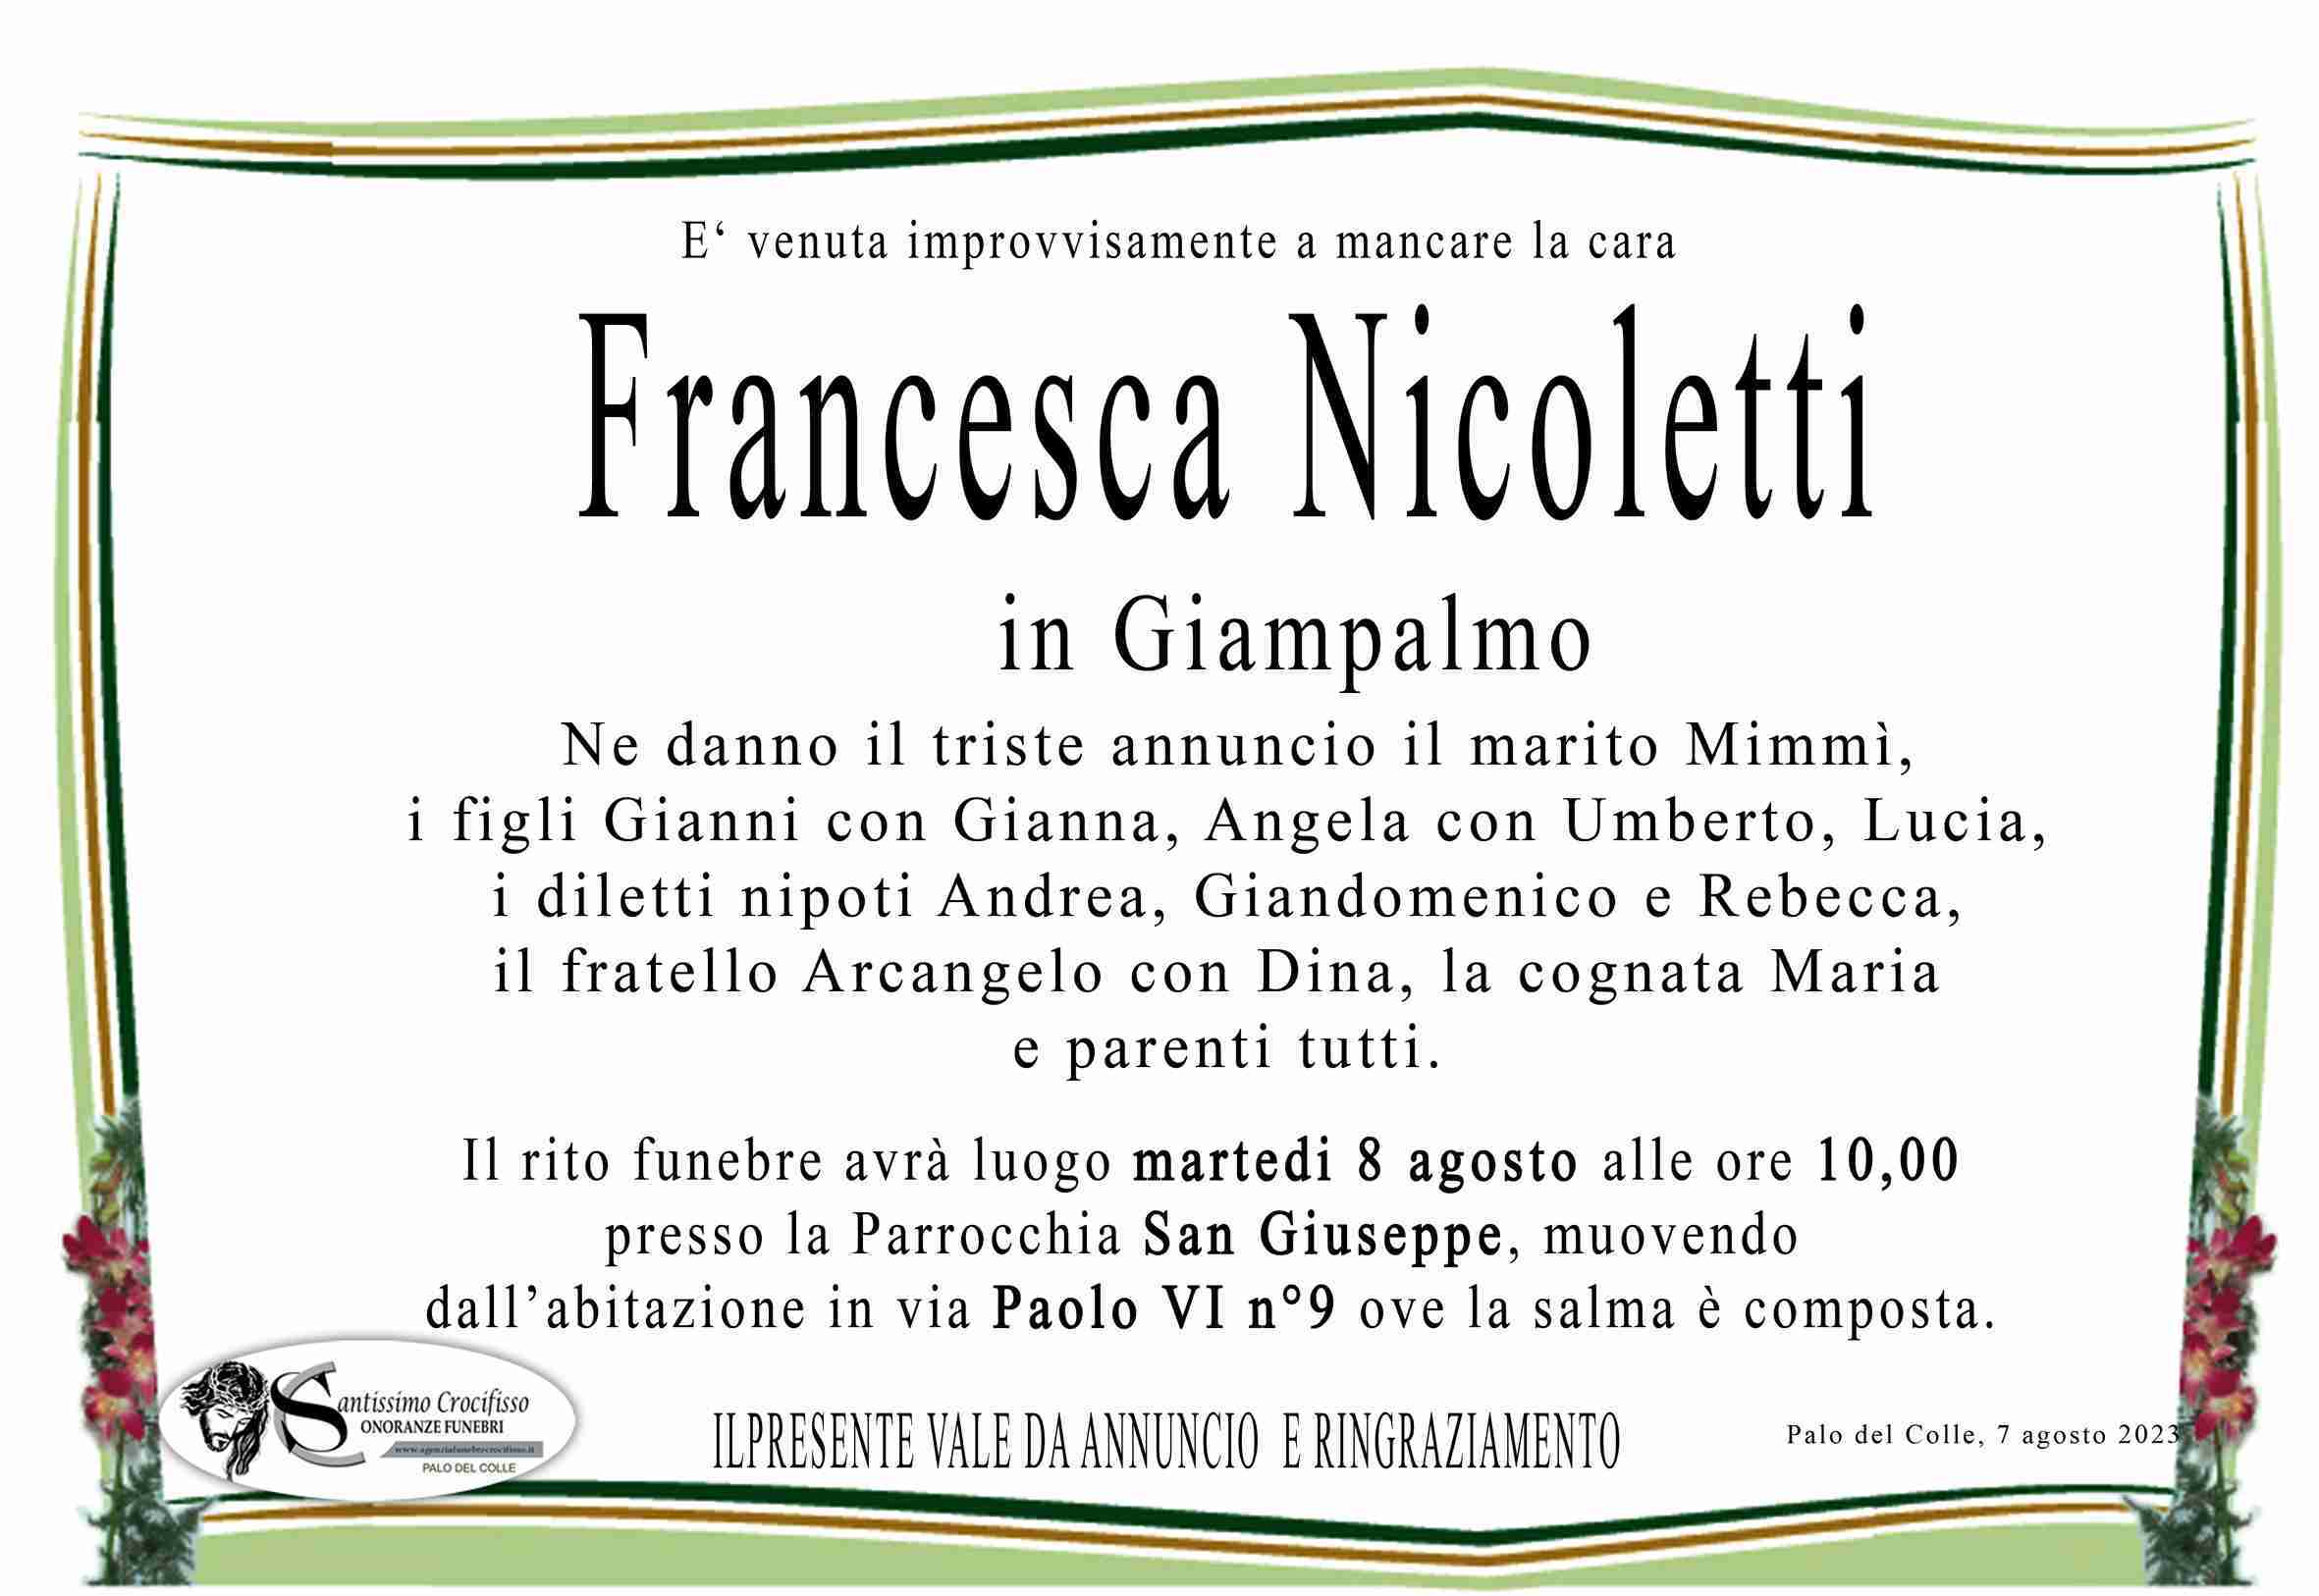 Francesca Nicoletti